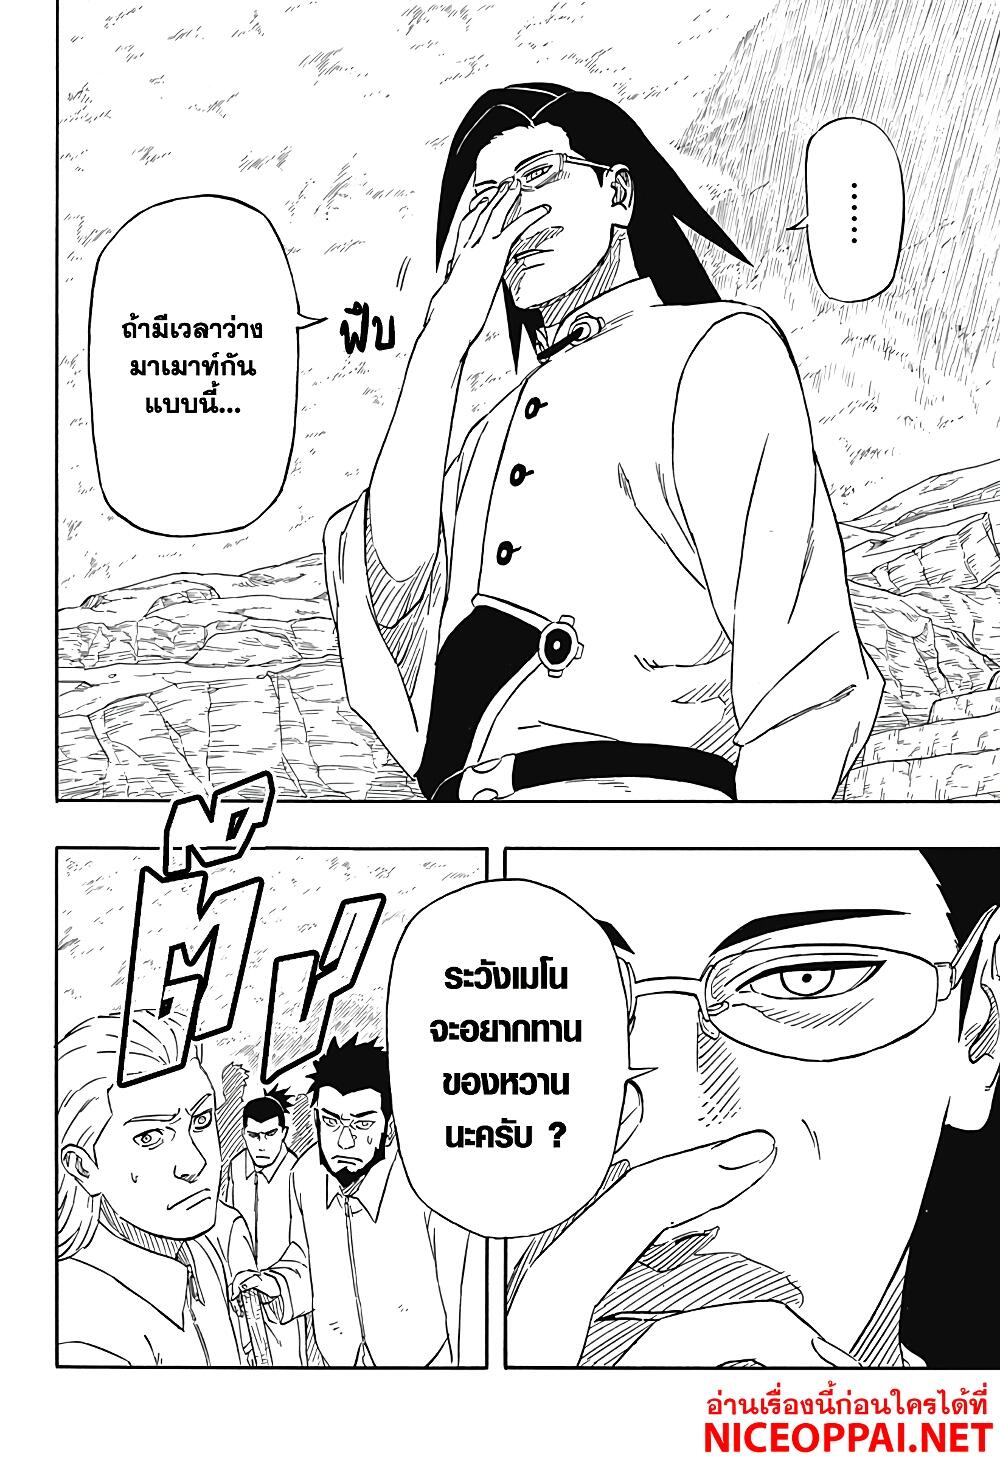 Naruto Sasuke's Story -The Uchiha and the Heavenly Stardust 2-2